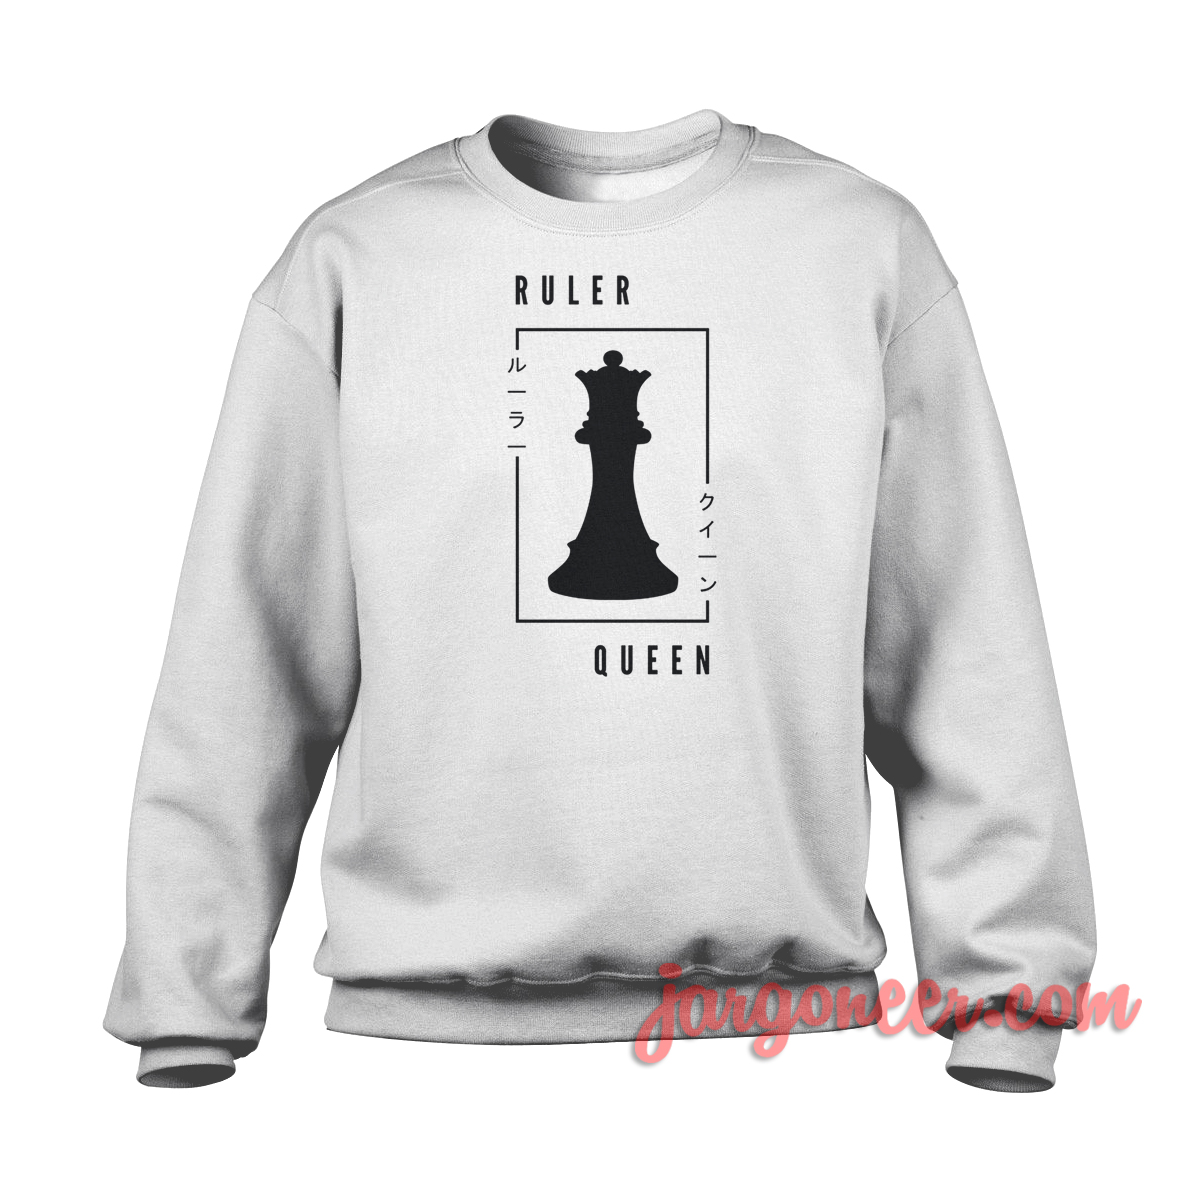 The Ruler Queen - Shop Unique Graphic Cool Shirt Designs